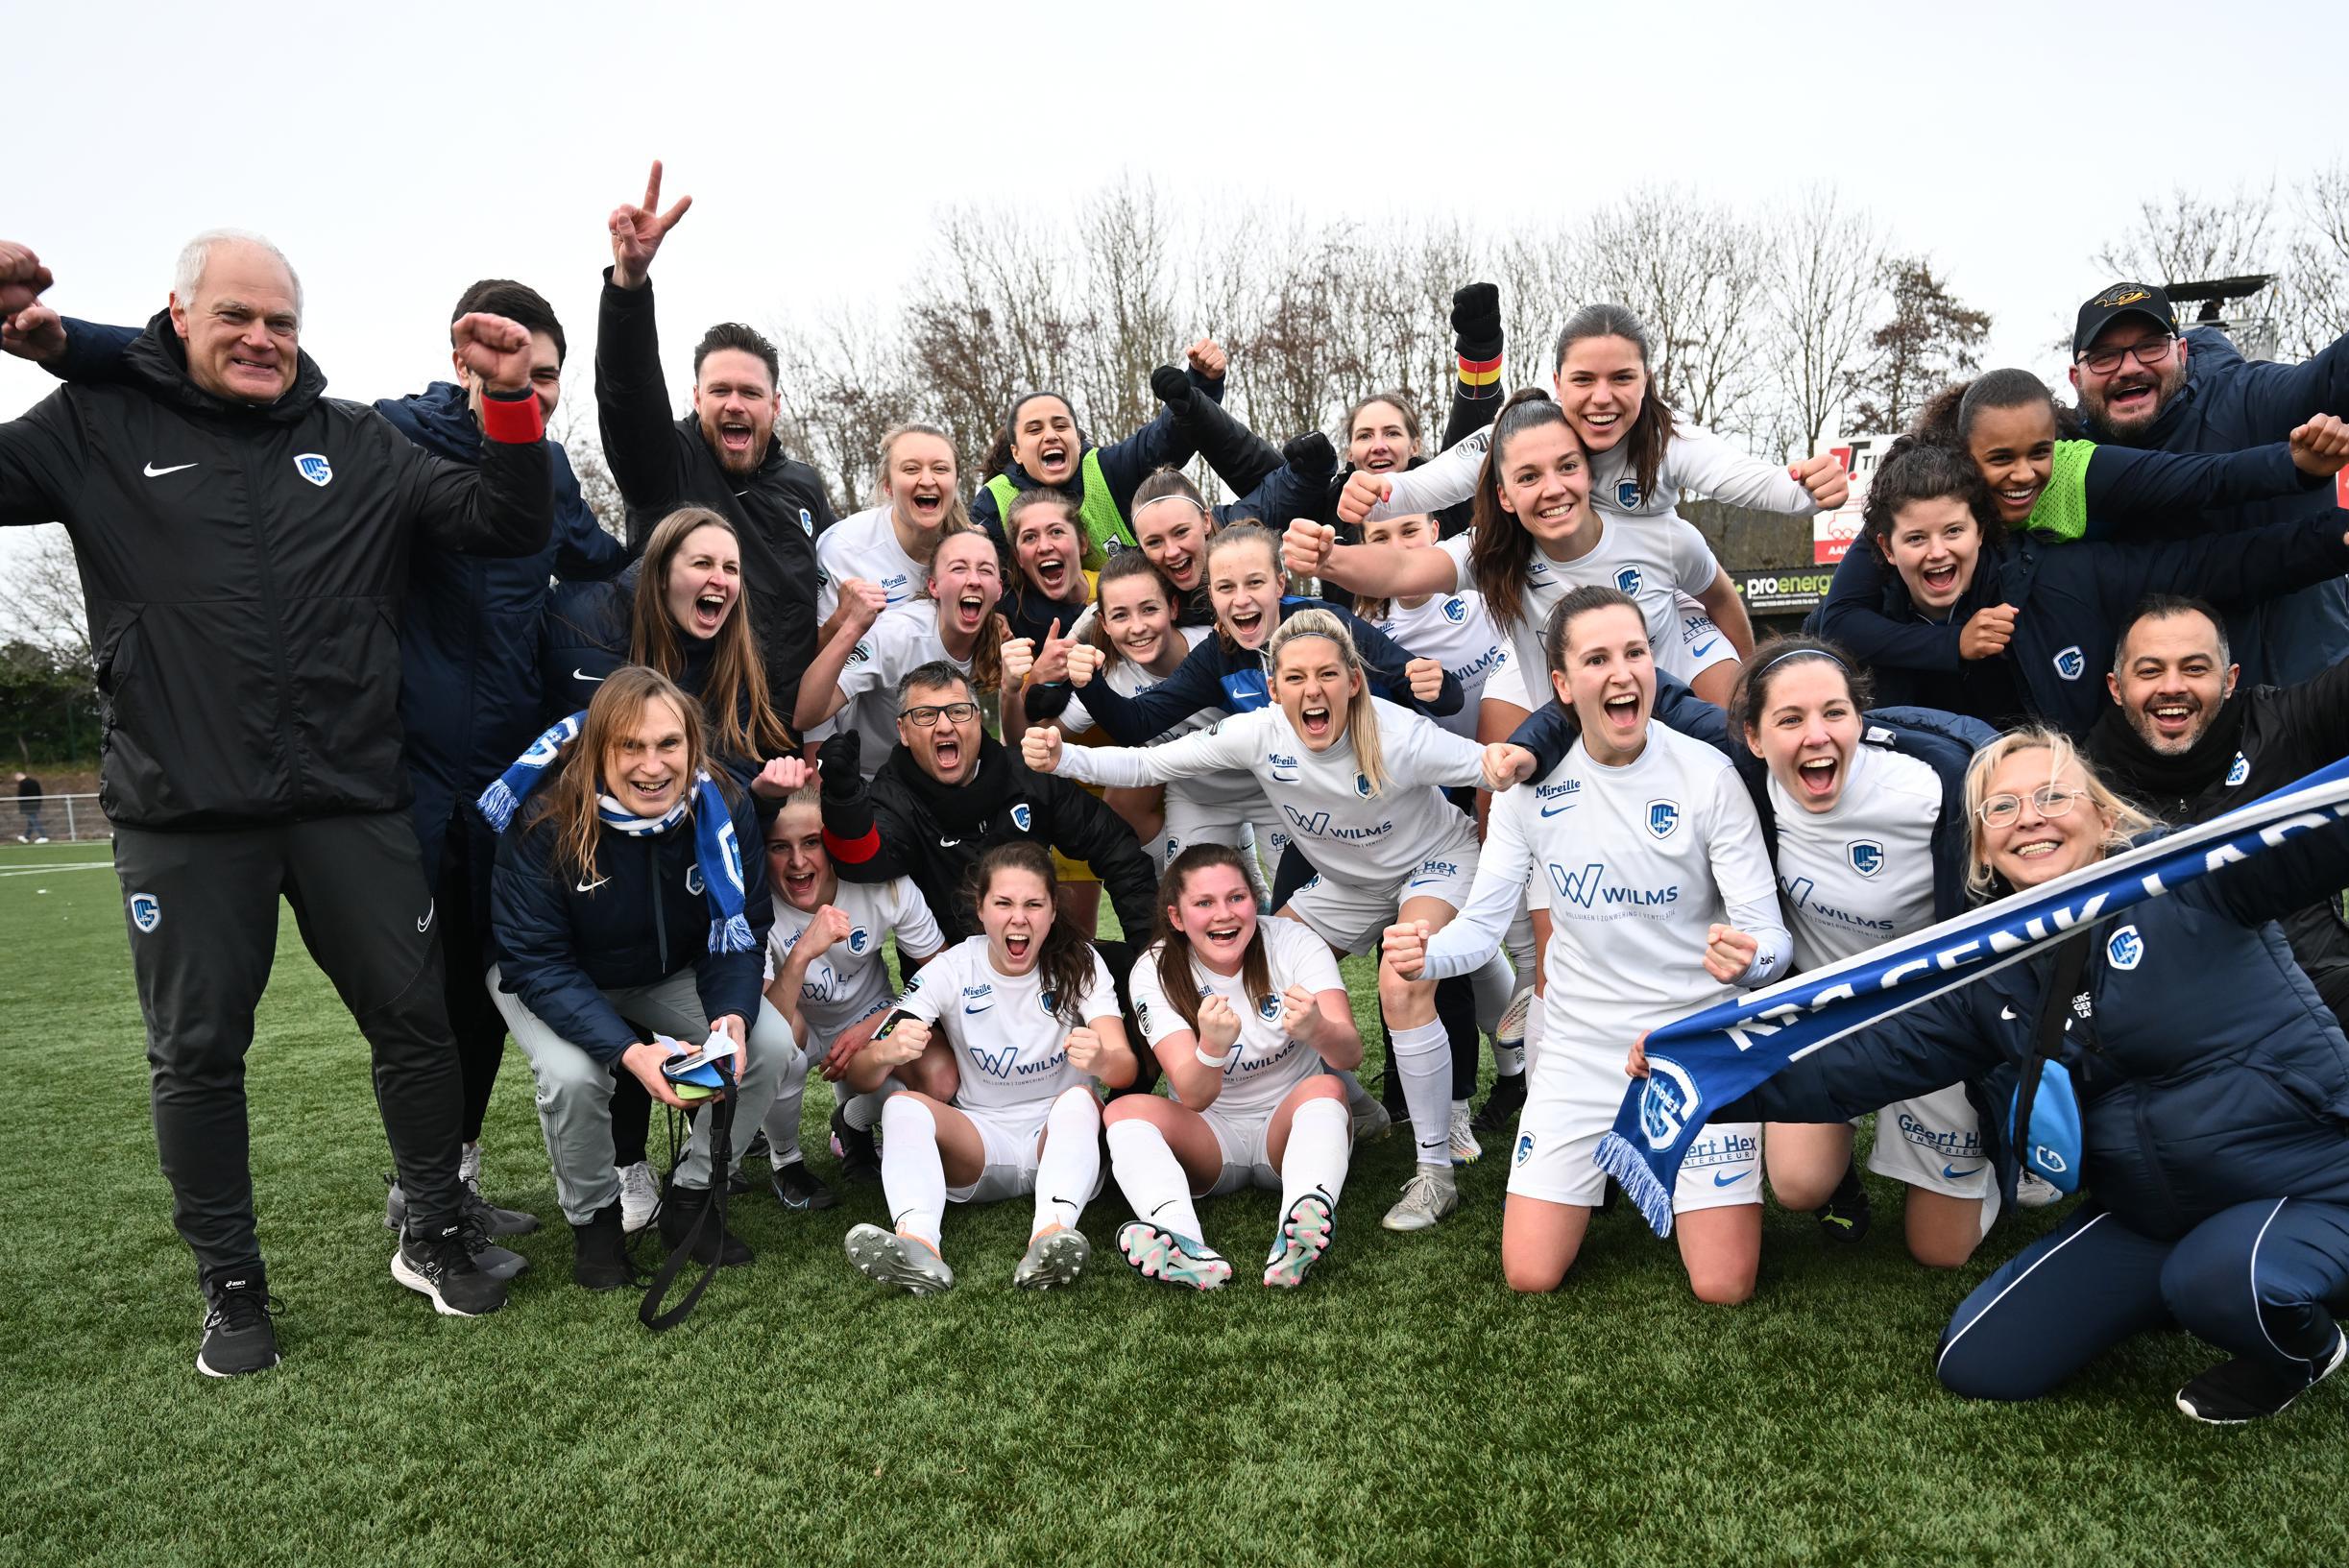 hefboom weerstand Te Sterk Genk Ladies stoot door naar tweede bekerfinale na winst tegen Club  Brugge (Genk) | Het Belang van Limburg Mobile